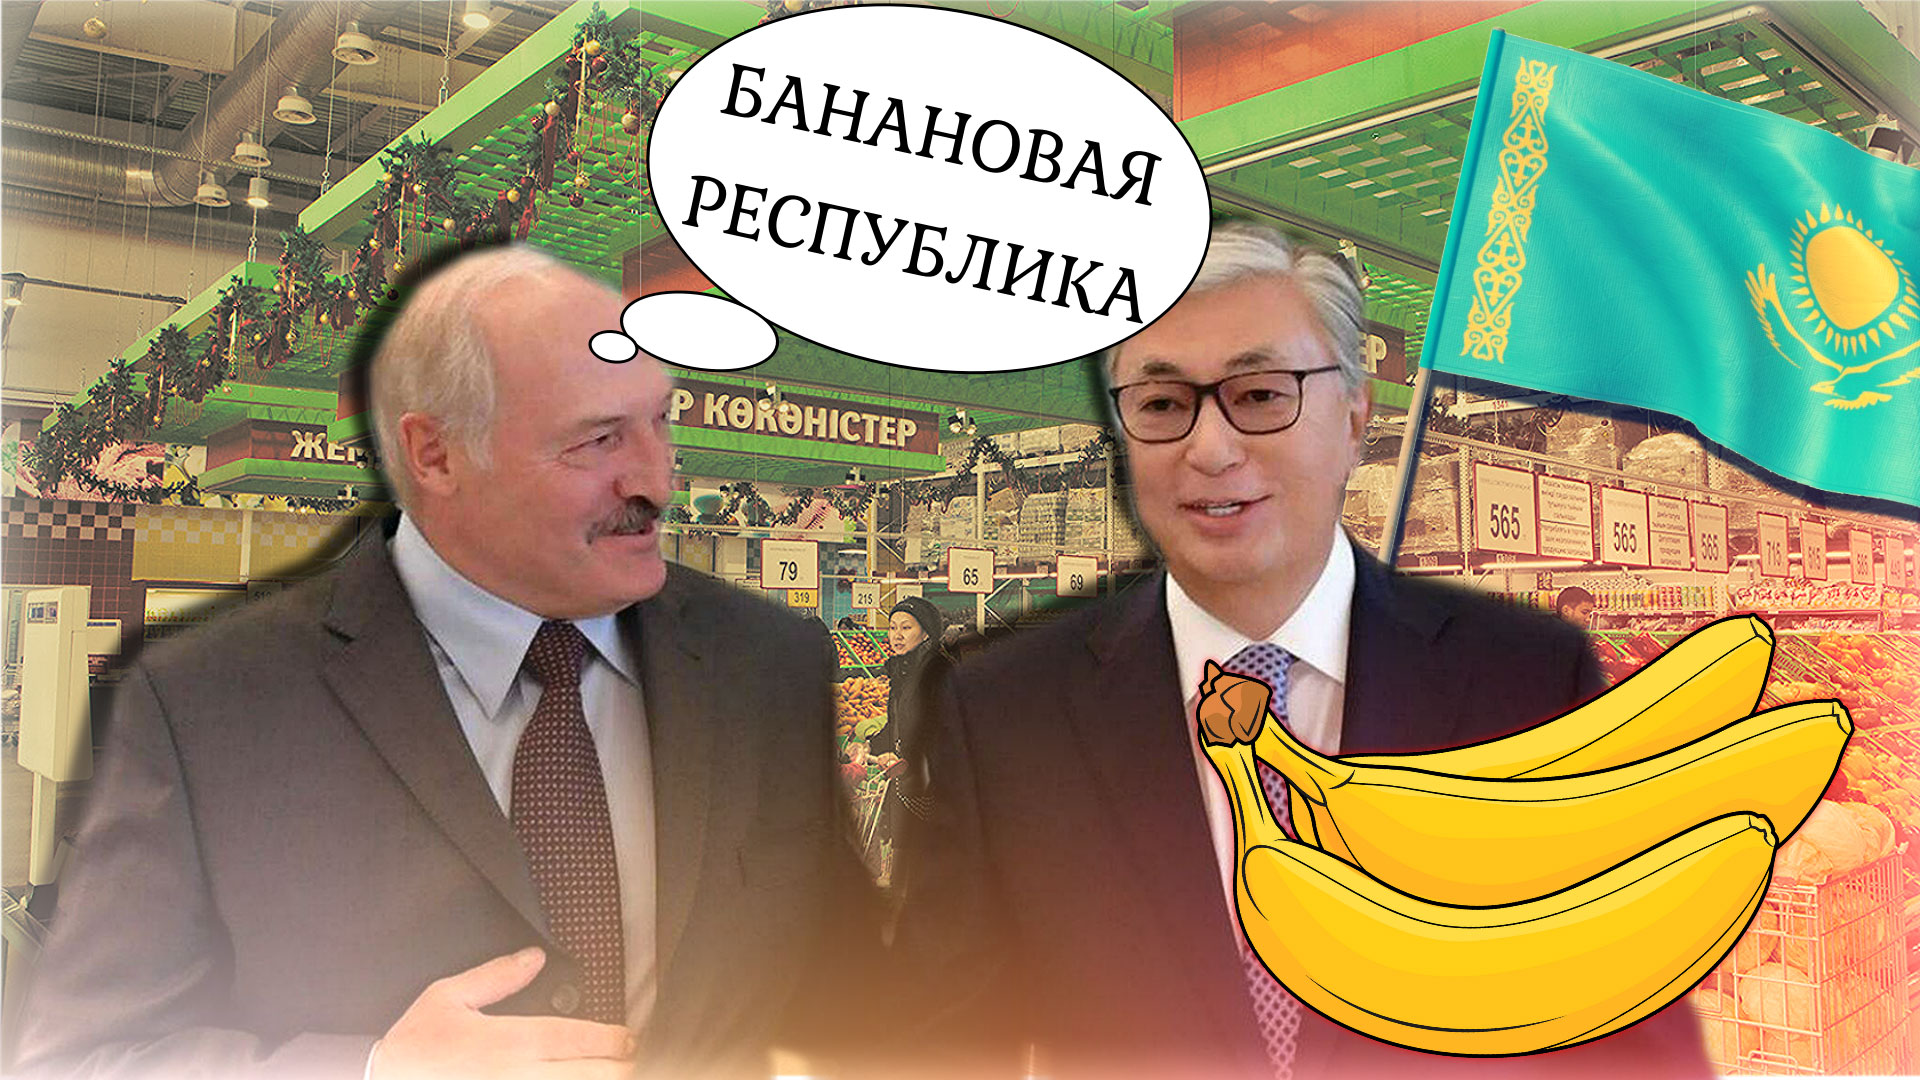 БАЦЬКА НАМ ПОМОЖЕТ 🚫 Казахстанские власти: остаётся надежда лишь на соседей Китай, Россия, Беларусь